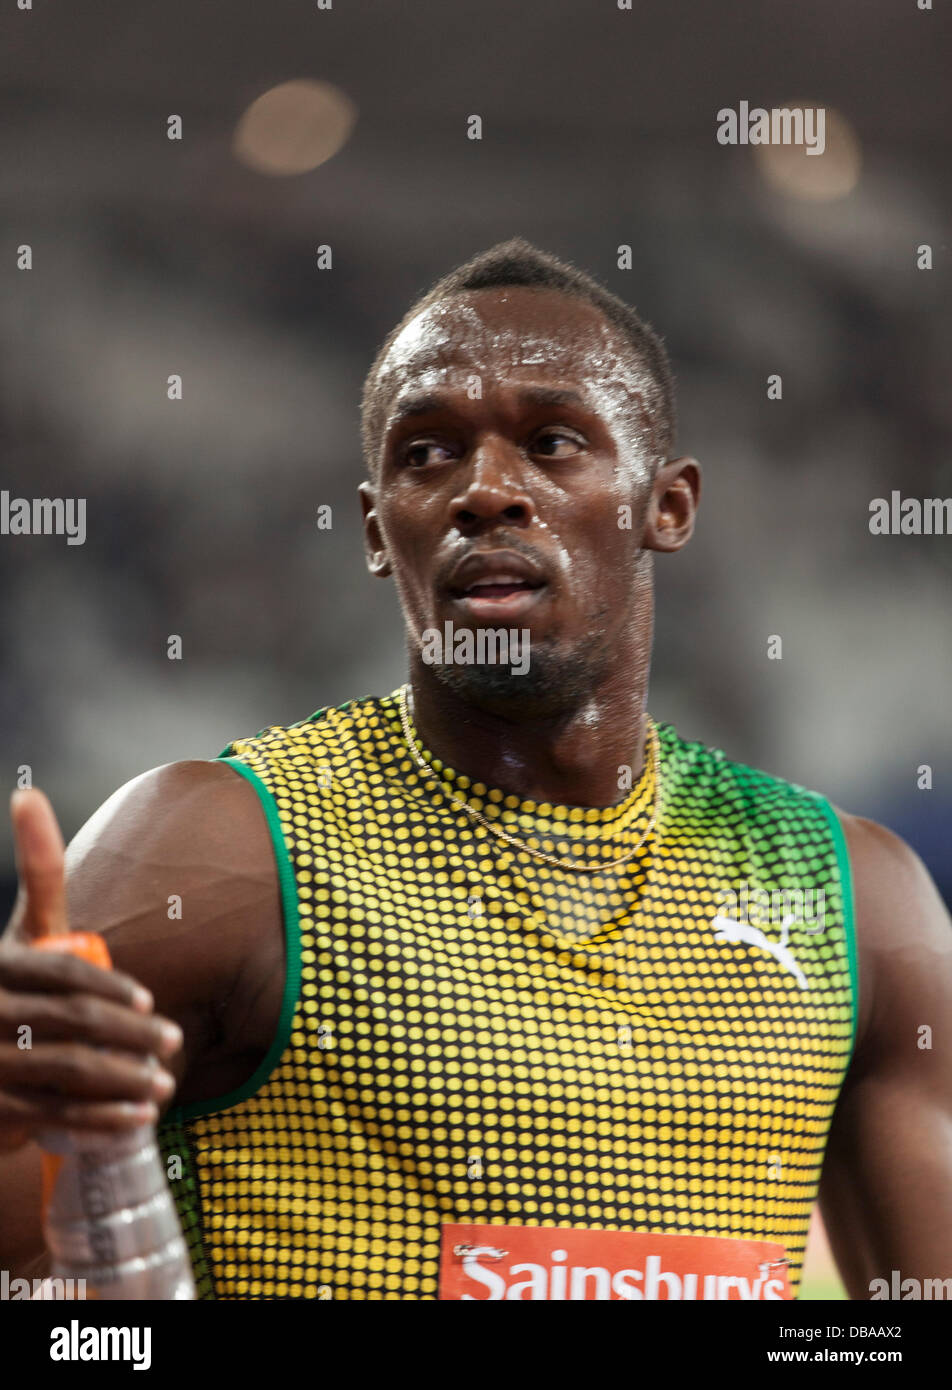 London, UK. 26. Juli, Usain Bolt gewinnt 100m Herren-Rennen bei den Diamond-League-Spiele erreicht Usain Bolt Saison am besten bei 9,85 Sekunden, Geburtstag Spiele britischen Leichtathletik, London. 2013. Foto: Credit: Rebecca Andrews/Alamy Live-Nachrichten Stockfoto